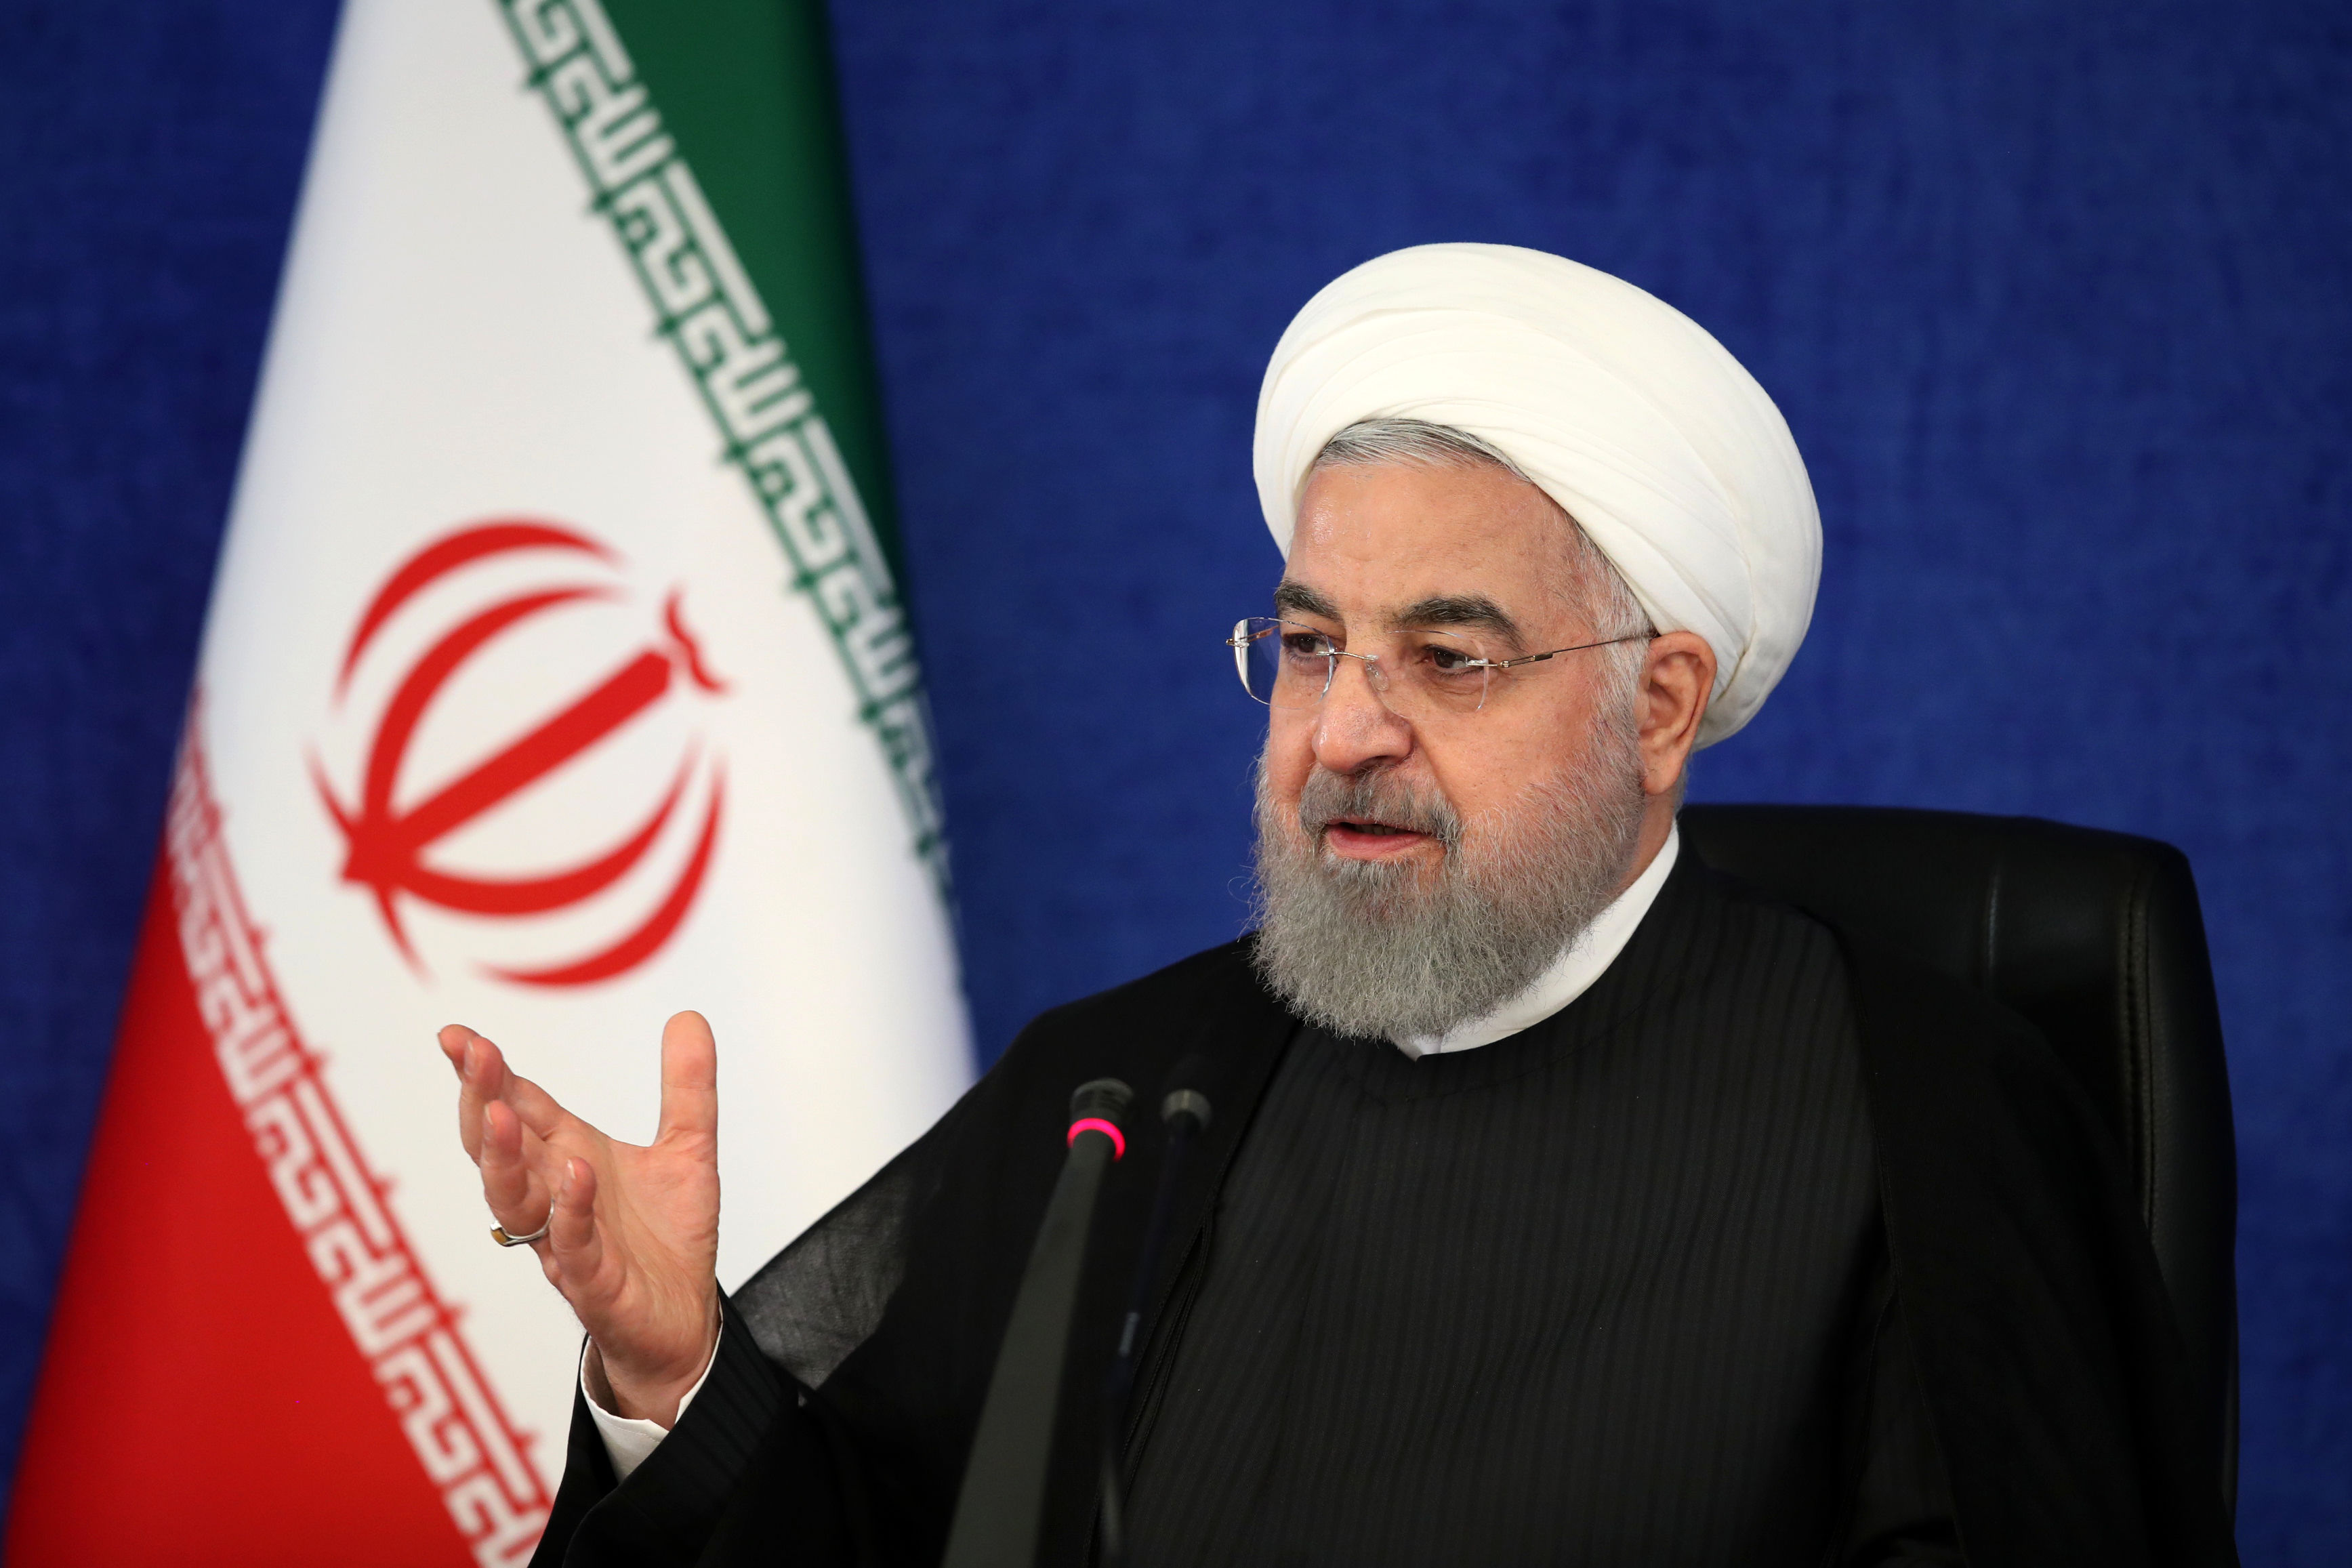 دستور مهم روحانی به وزیر ارتباطات/ کرونا در موج دوم مهاجم تر شده است/ یک مسئول تلفنی گفت کنکور را سال دیگر برگزار کن